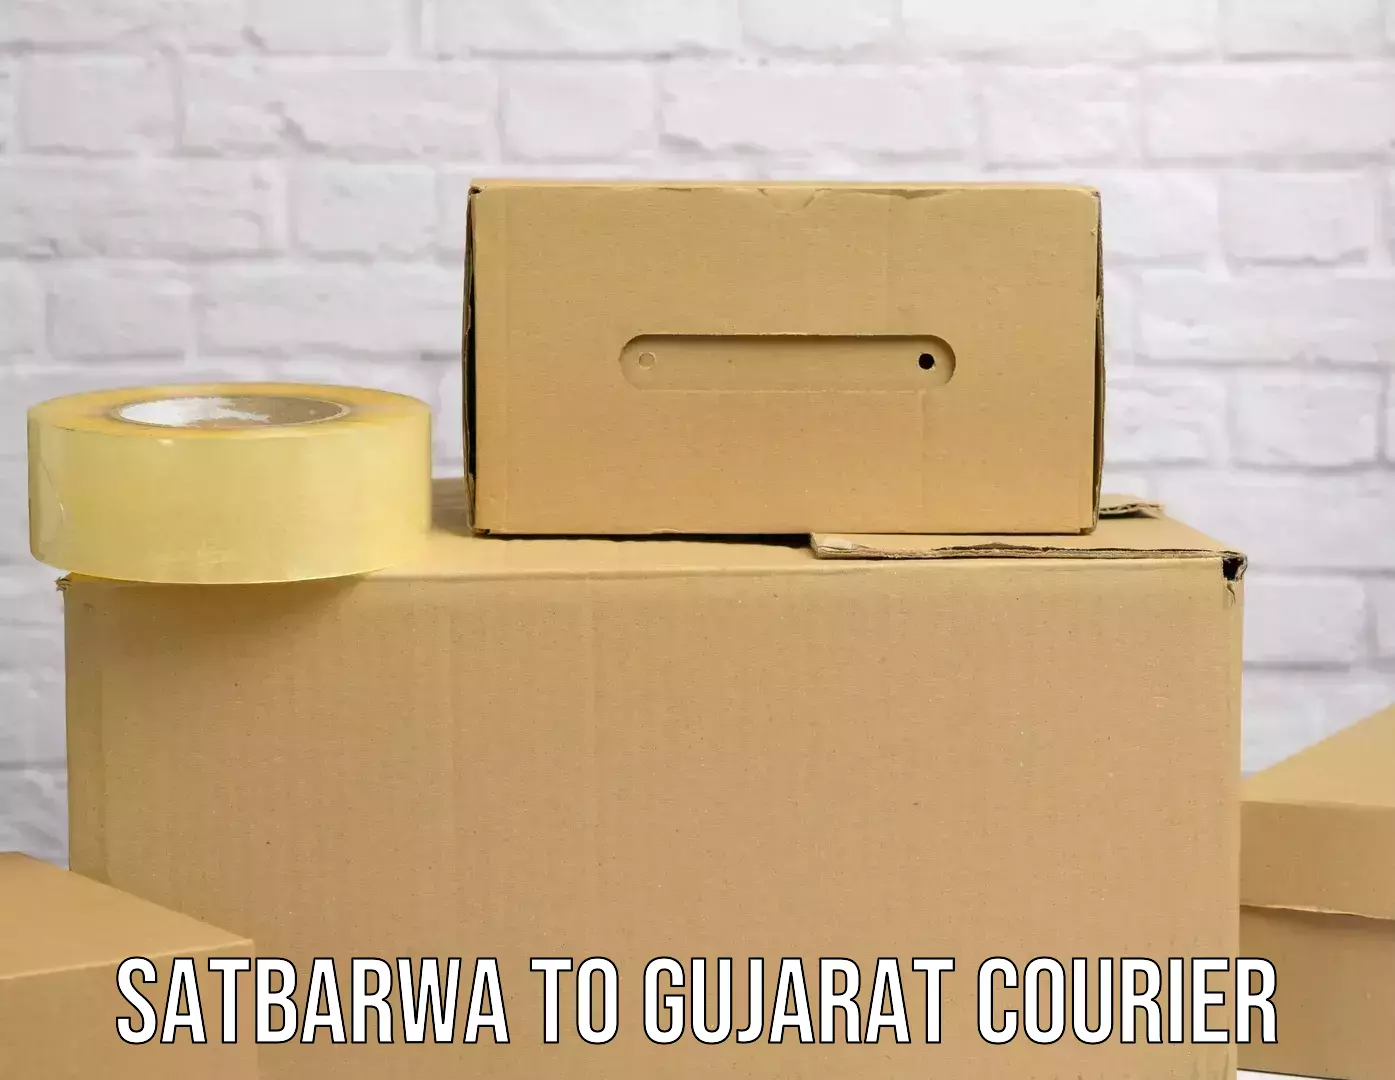 Door-to-door freight service Satbarwa to Gujarat